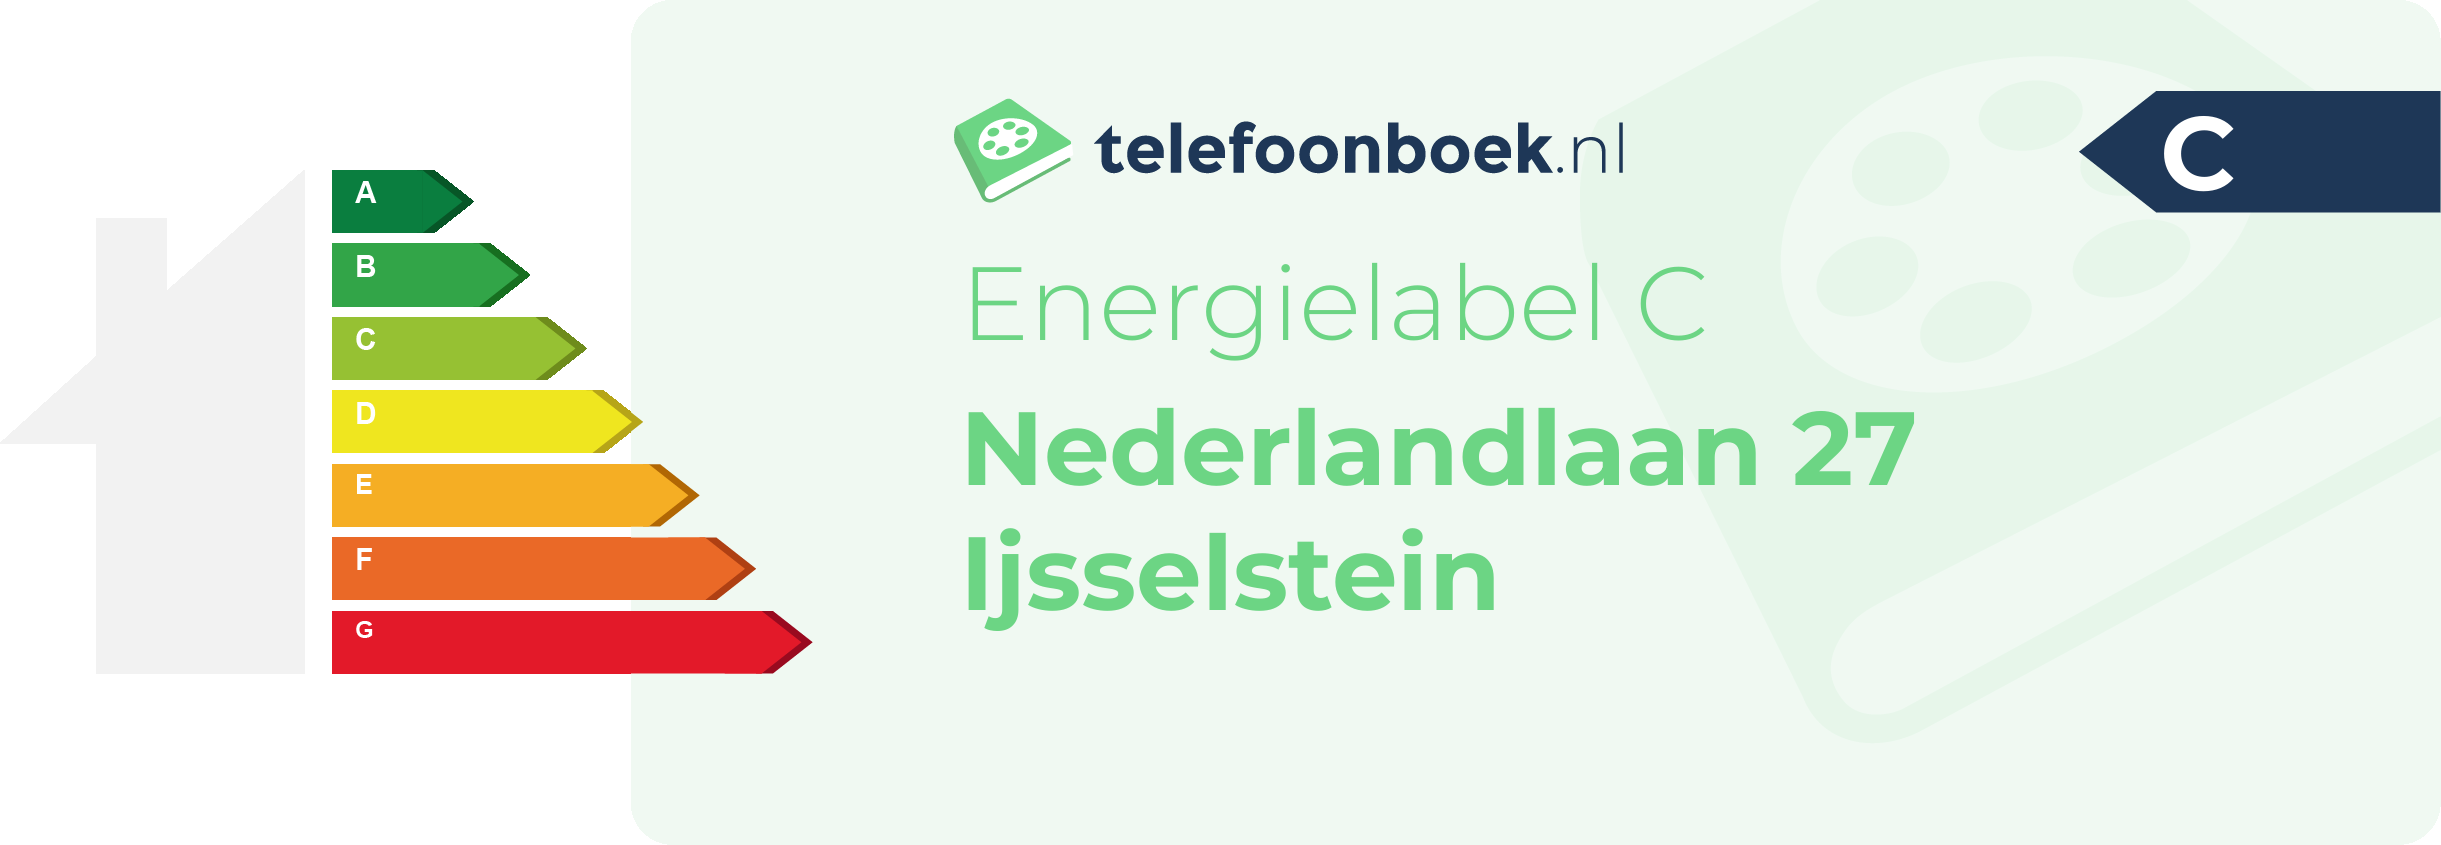 Energielabel Nederlandlaan 27 Ijsselstein